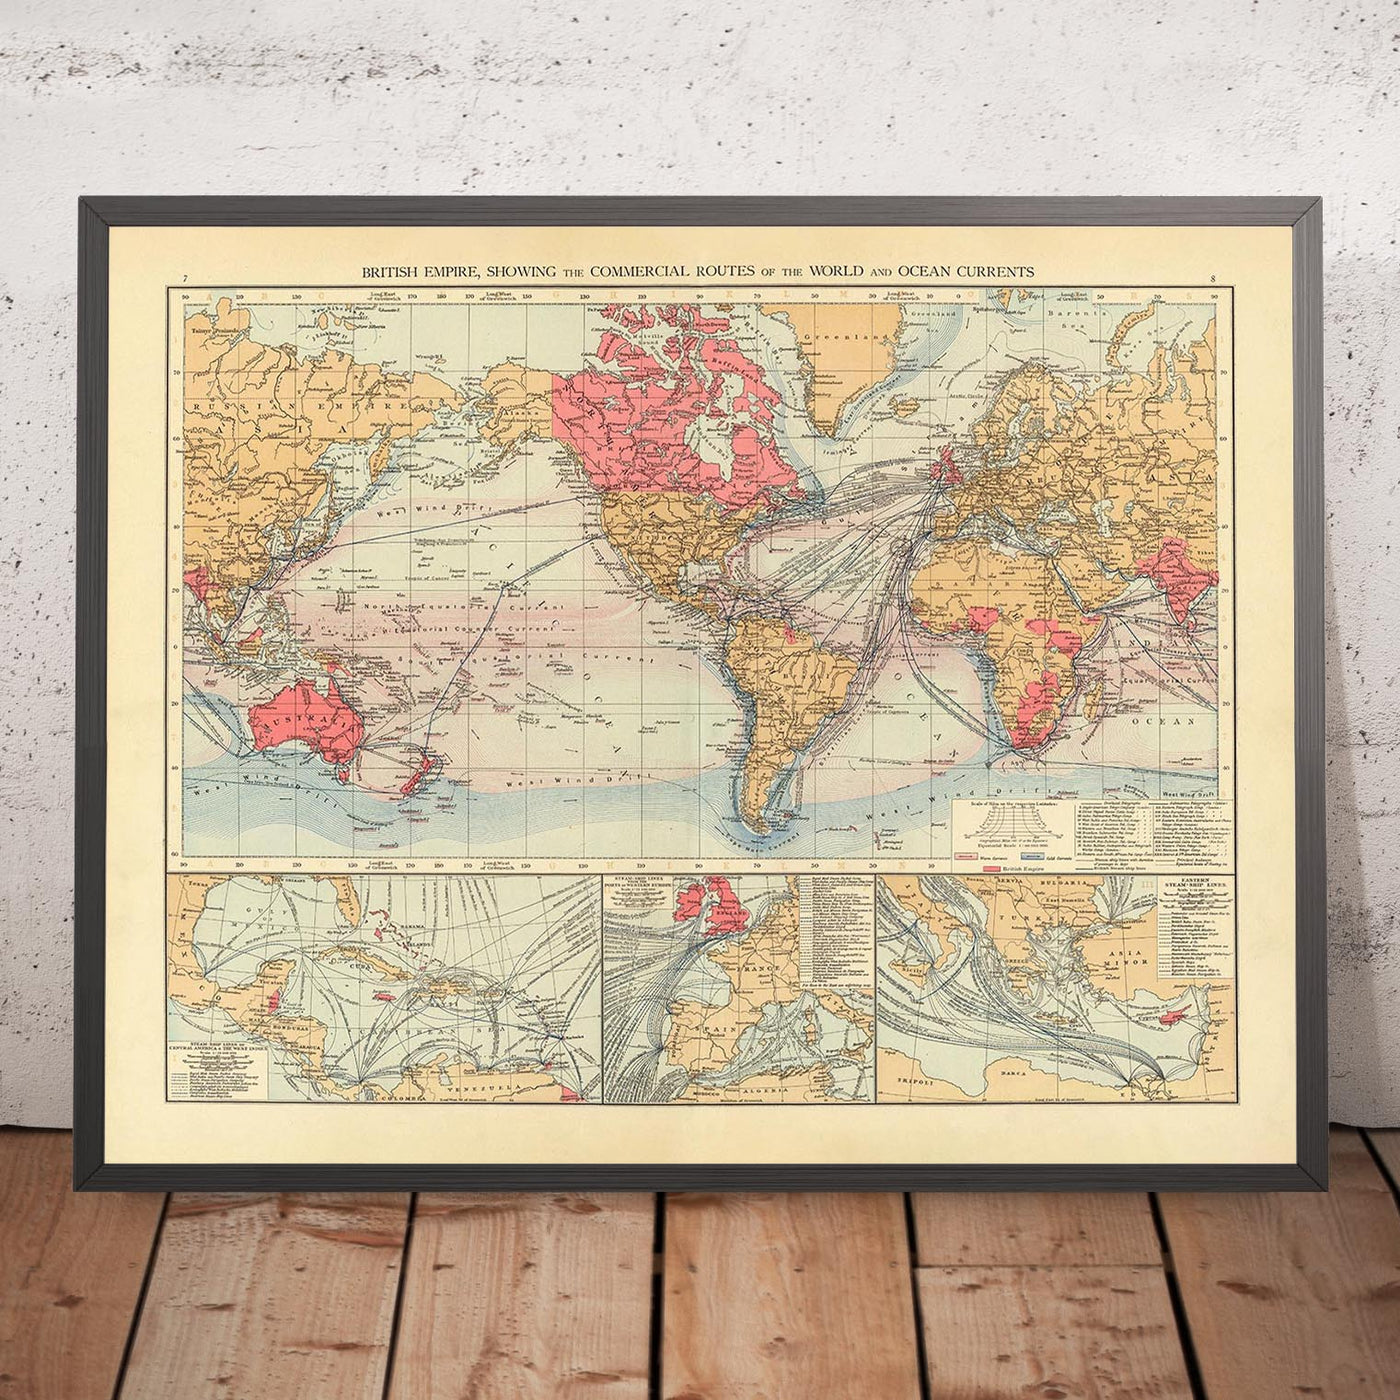 Alte Weltkarte der Handelsrouten des Britischen Empire von The Times aus dem Jahr 1895 – Die Britischen Inseln, Kanada, Indien, Australien, Neuseeland